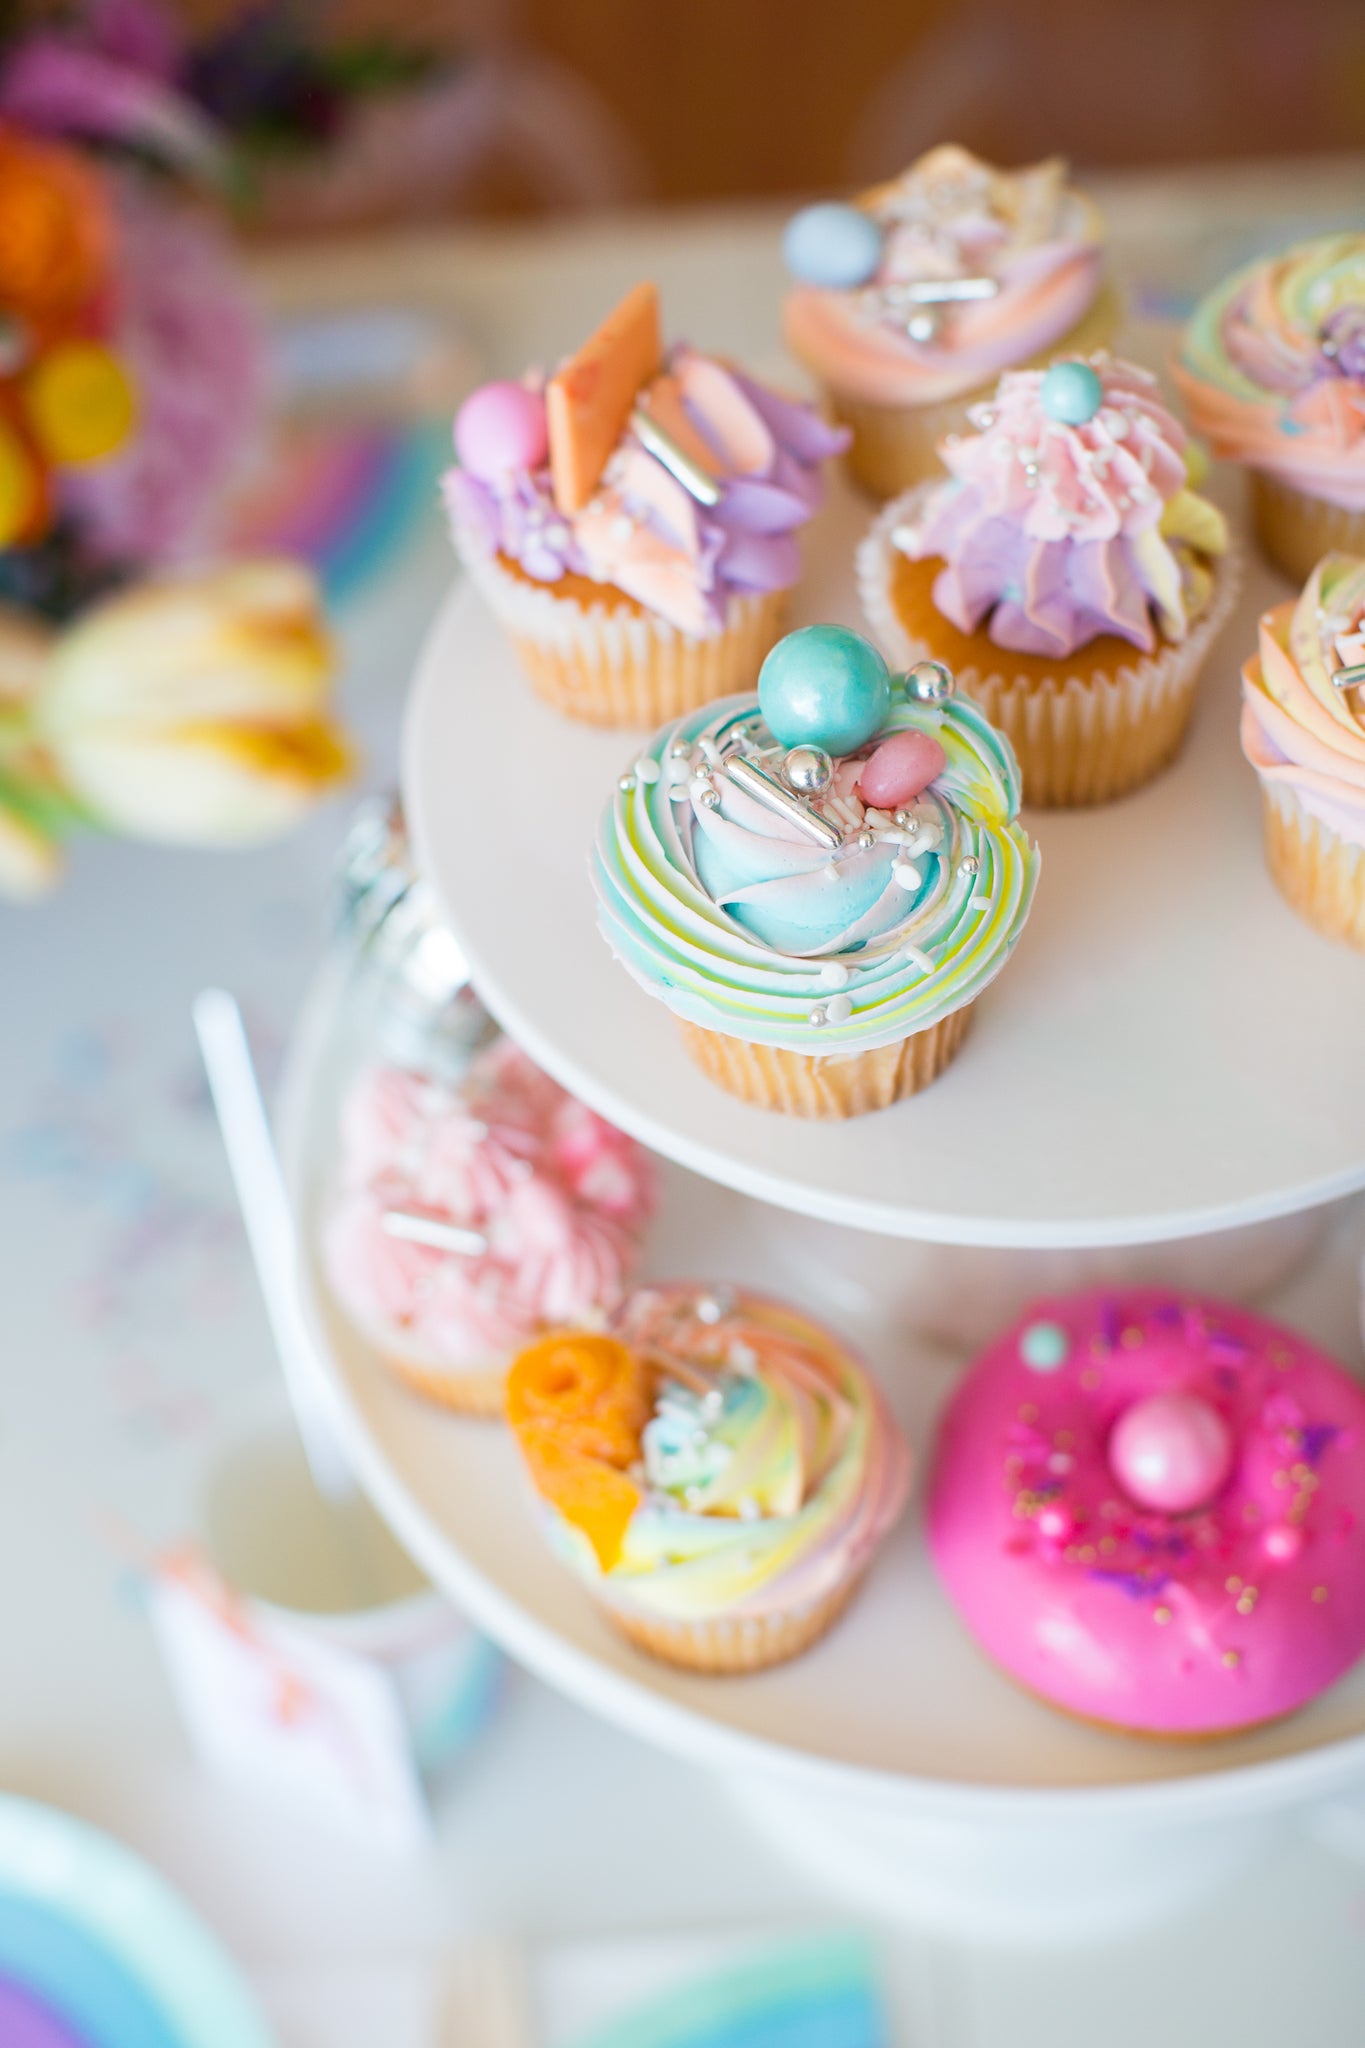 Rainbow cupcakes for a fun rainbow party dessert idea.